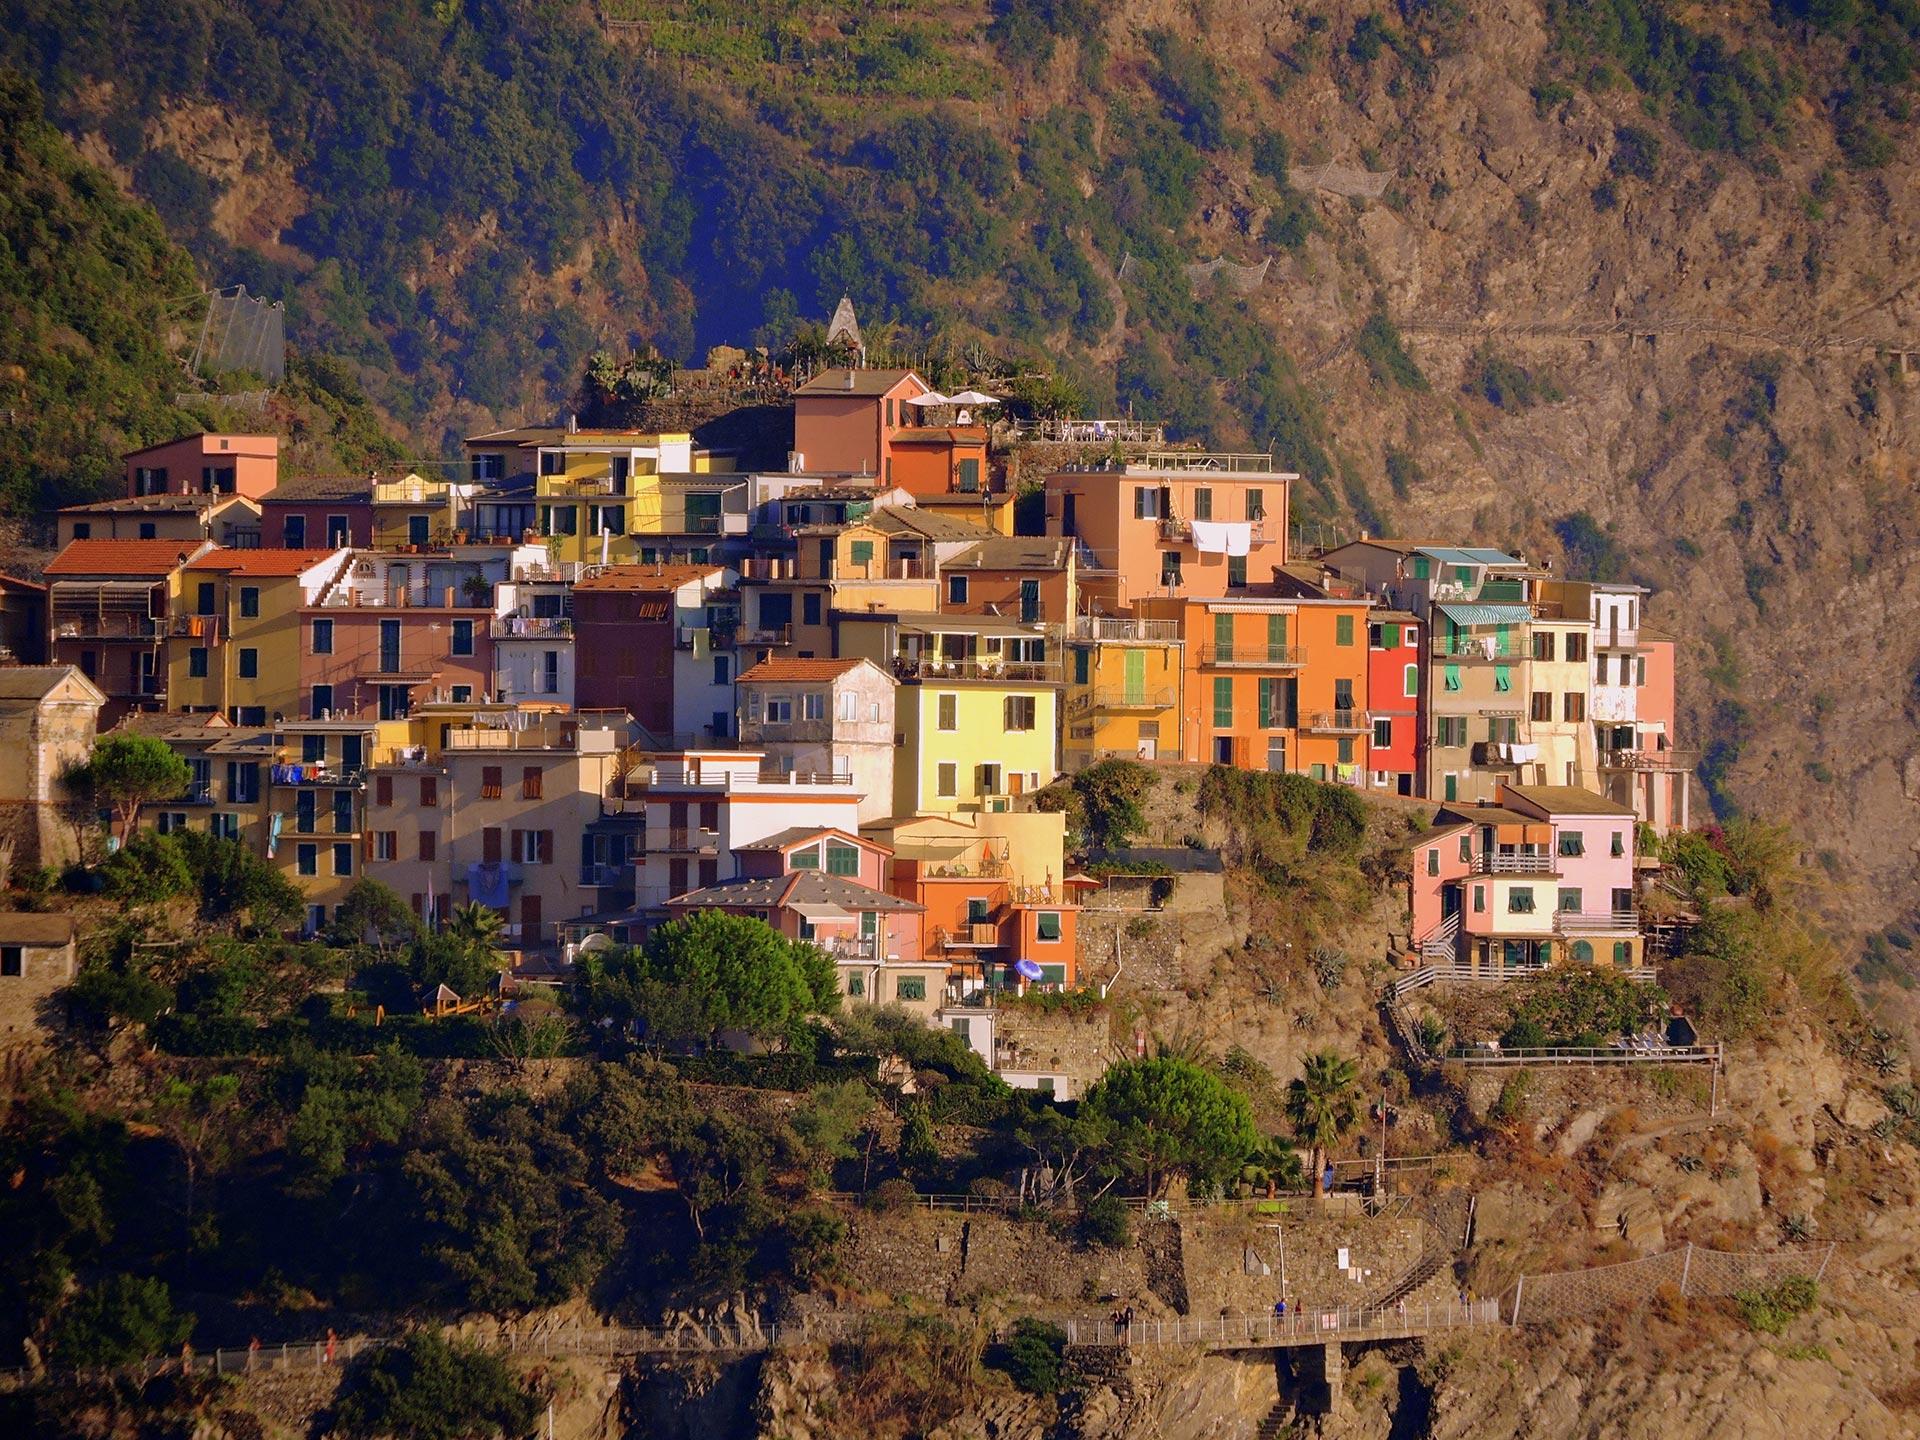 City of Cinque Terre